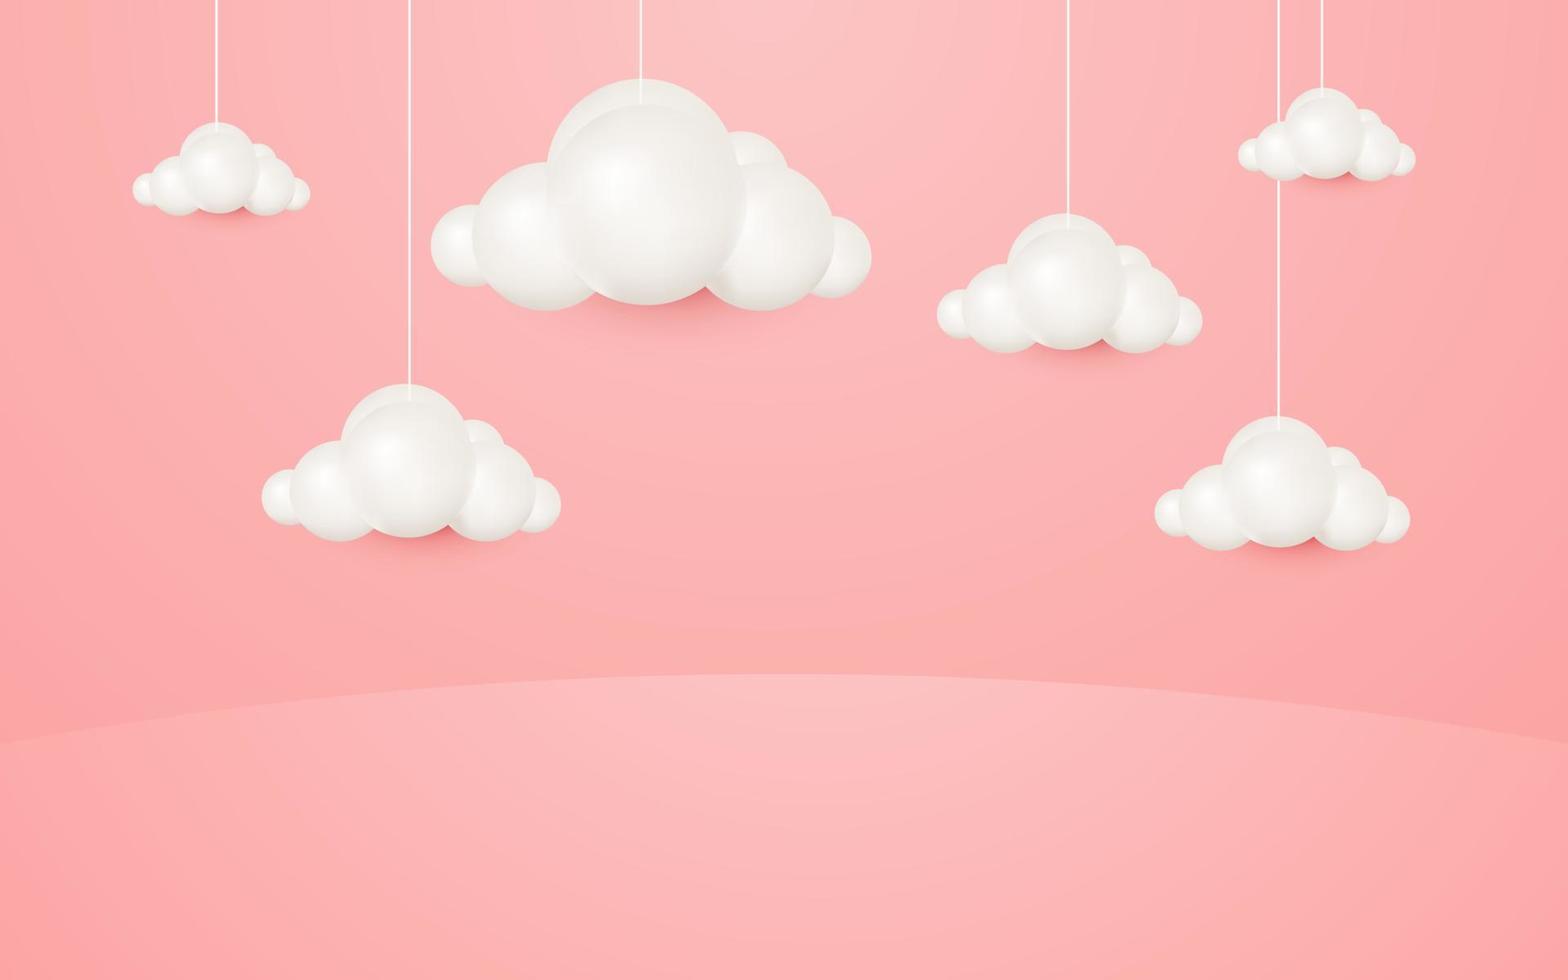 Những đám mây treo phong cách hoạt hình 3D trên nền hồng pastel sẽ đưa bạn vào một thế giới ngập tràn màu sắc và sinh động. Hãy cùng khám phá hình ảnh này và tận hưởng cảm giác như mình đang lạc vào một câu chuyện cổ tích đầy mơ mộng.